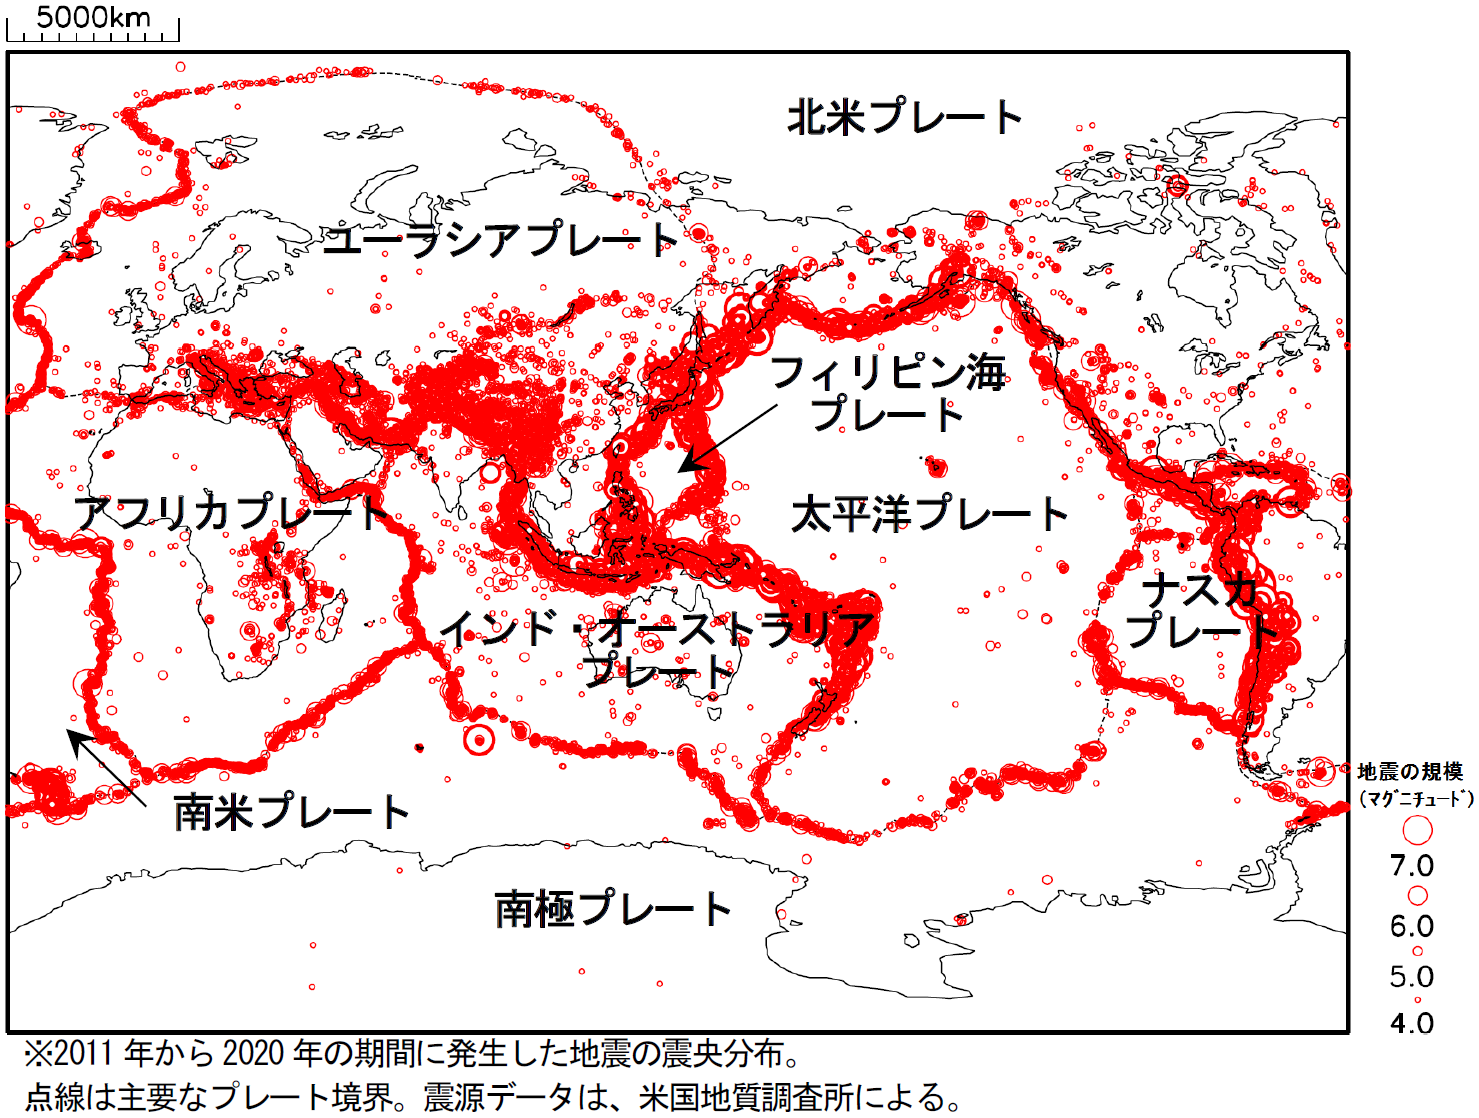 世界の地震